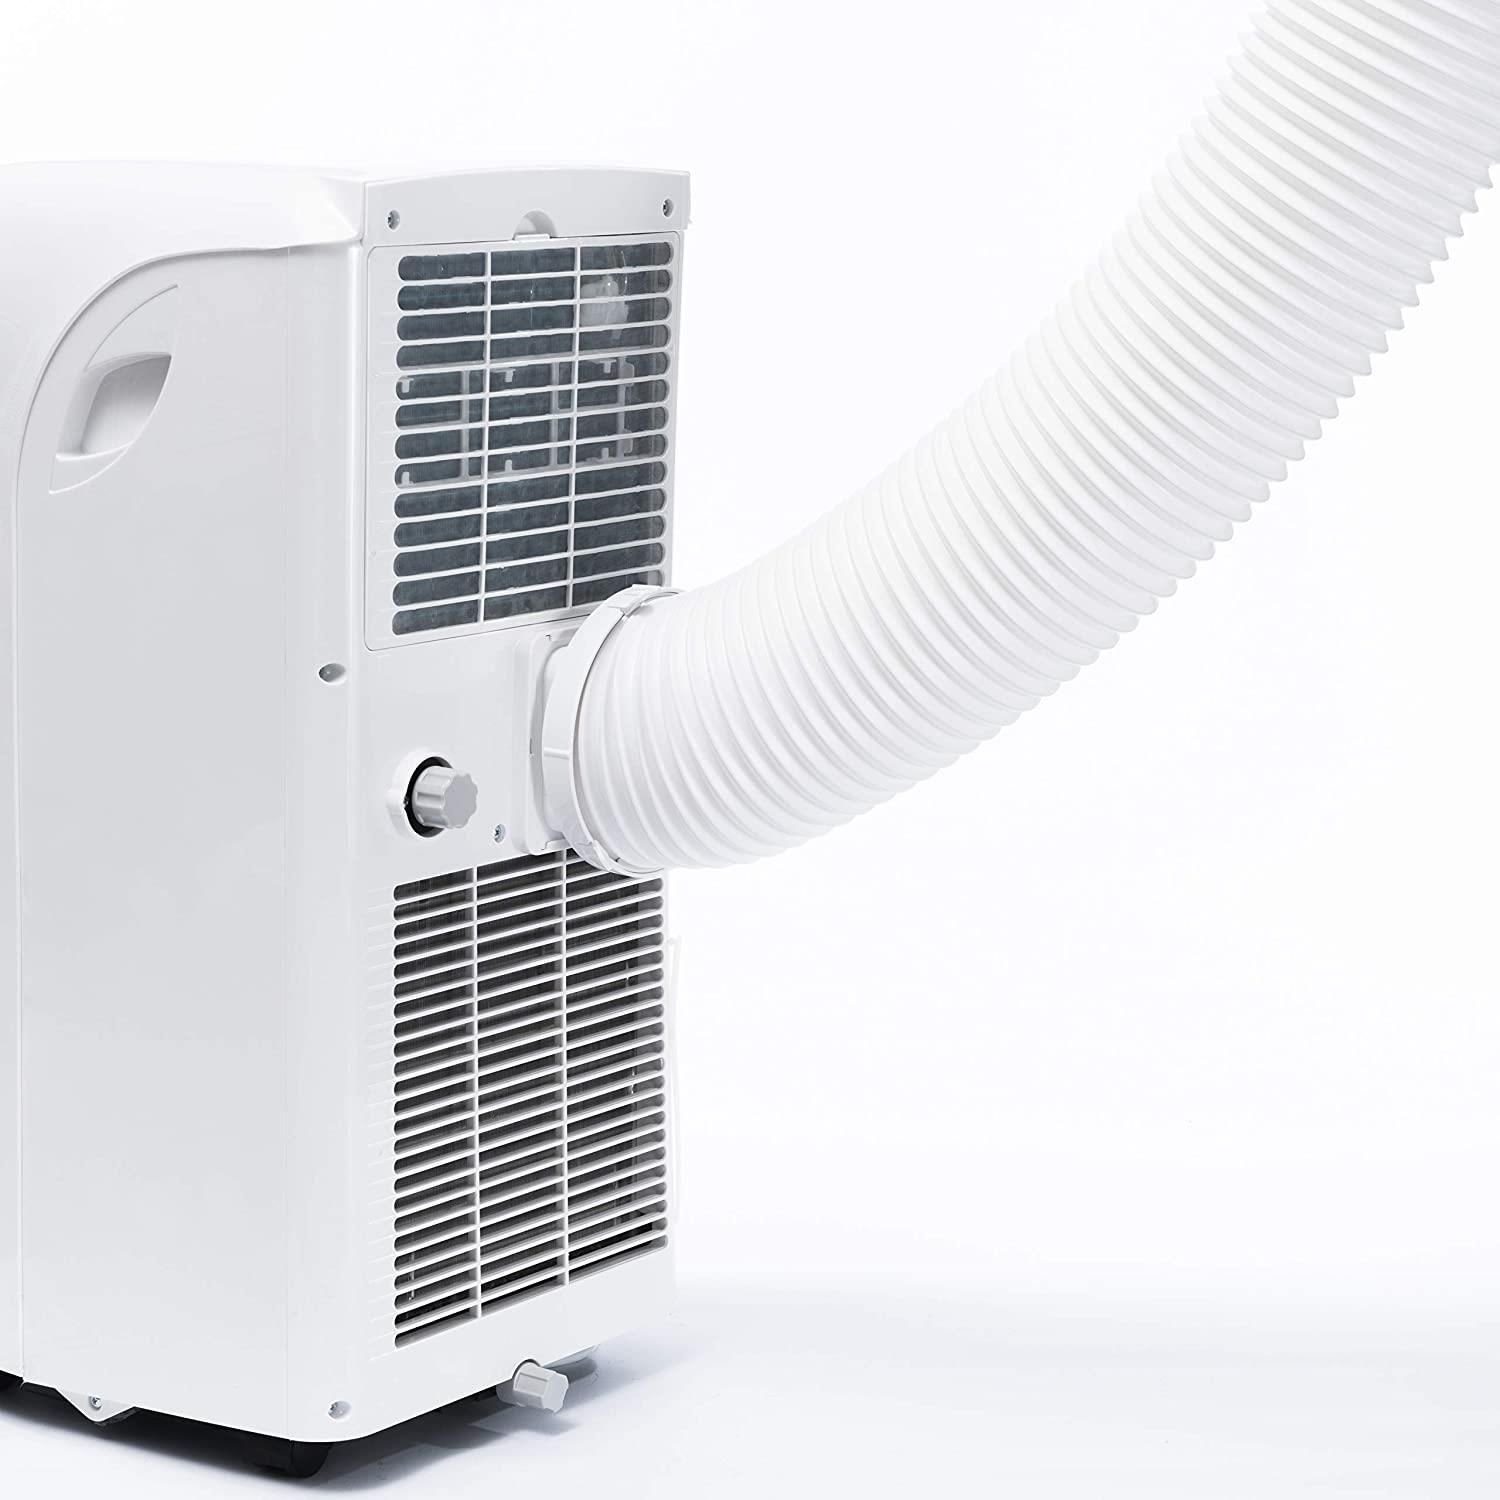 OLIMPIA SPLENDID Klimagerät BLUE minimale COMPACT DOLCECLIMA Ventilieren, Kühlen, Geräuschentwicklung, tragbar 10 P Klimagerät AIR-TECHNOLOGIE, Entfeuchten